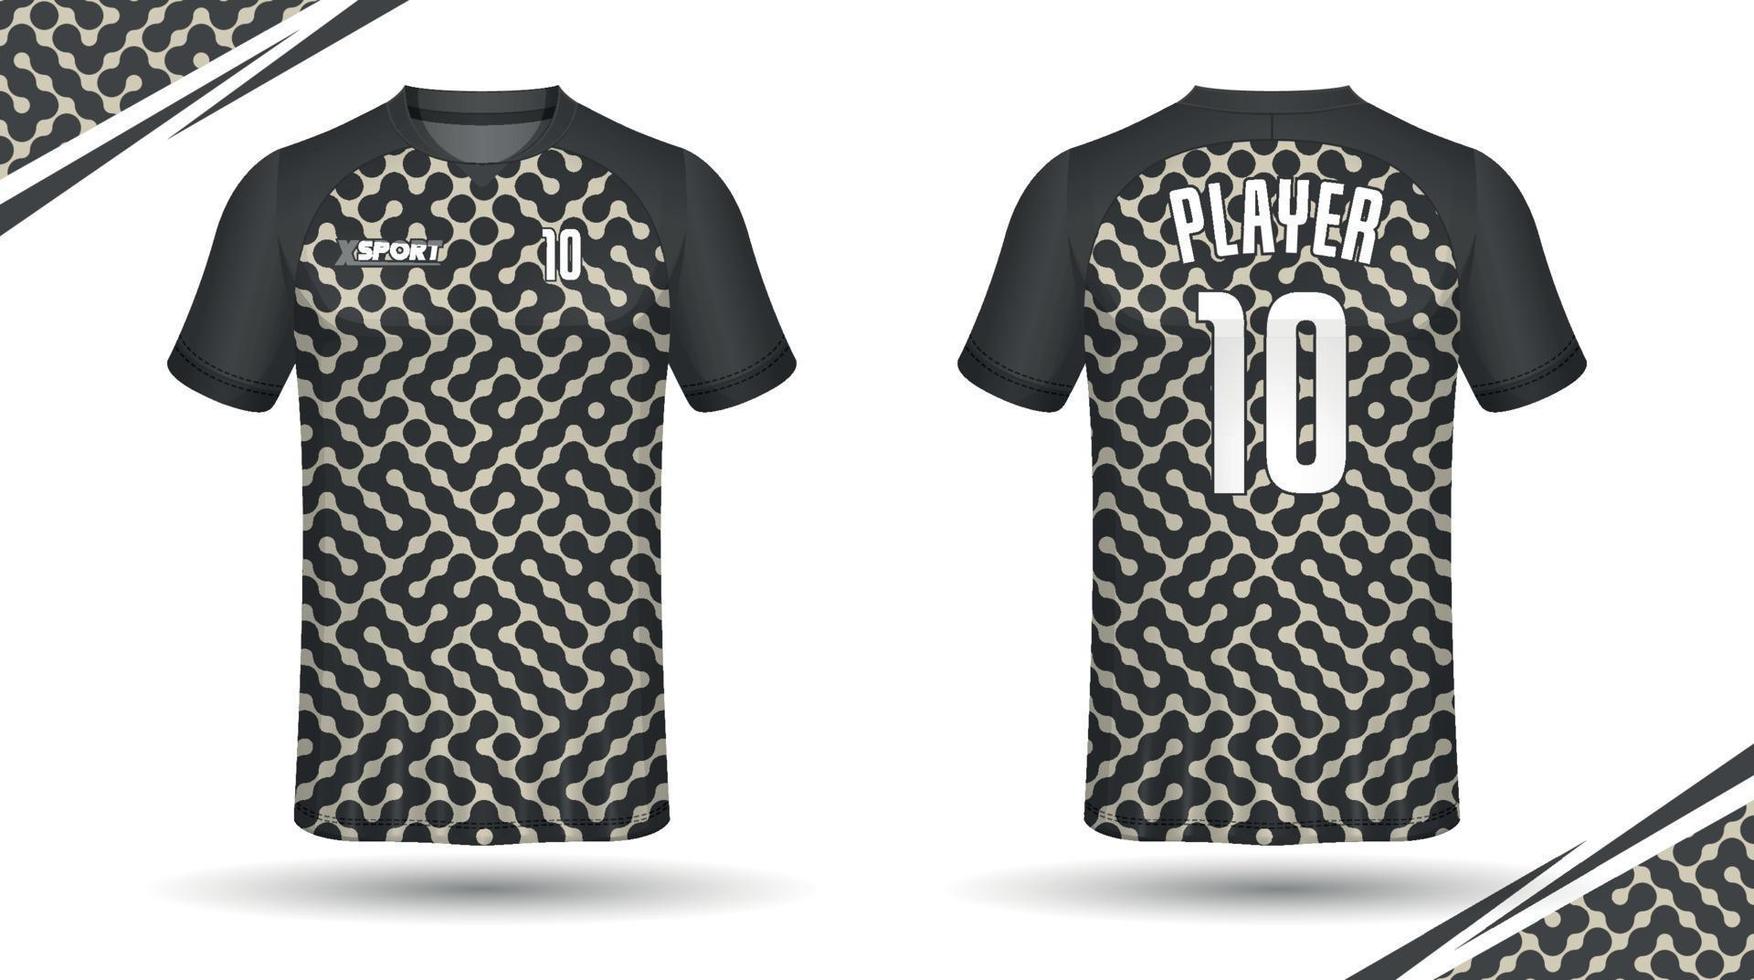 calcio maglia design per sublimazione, sport t camicia design vettore